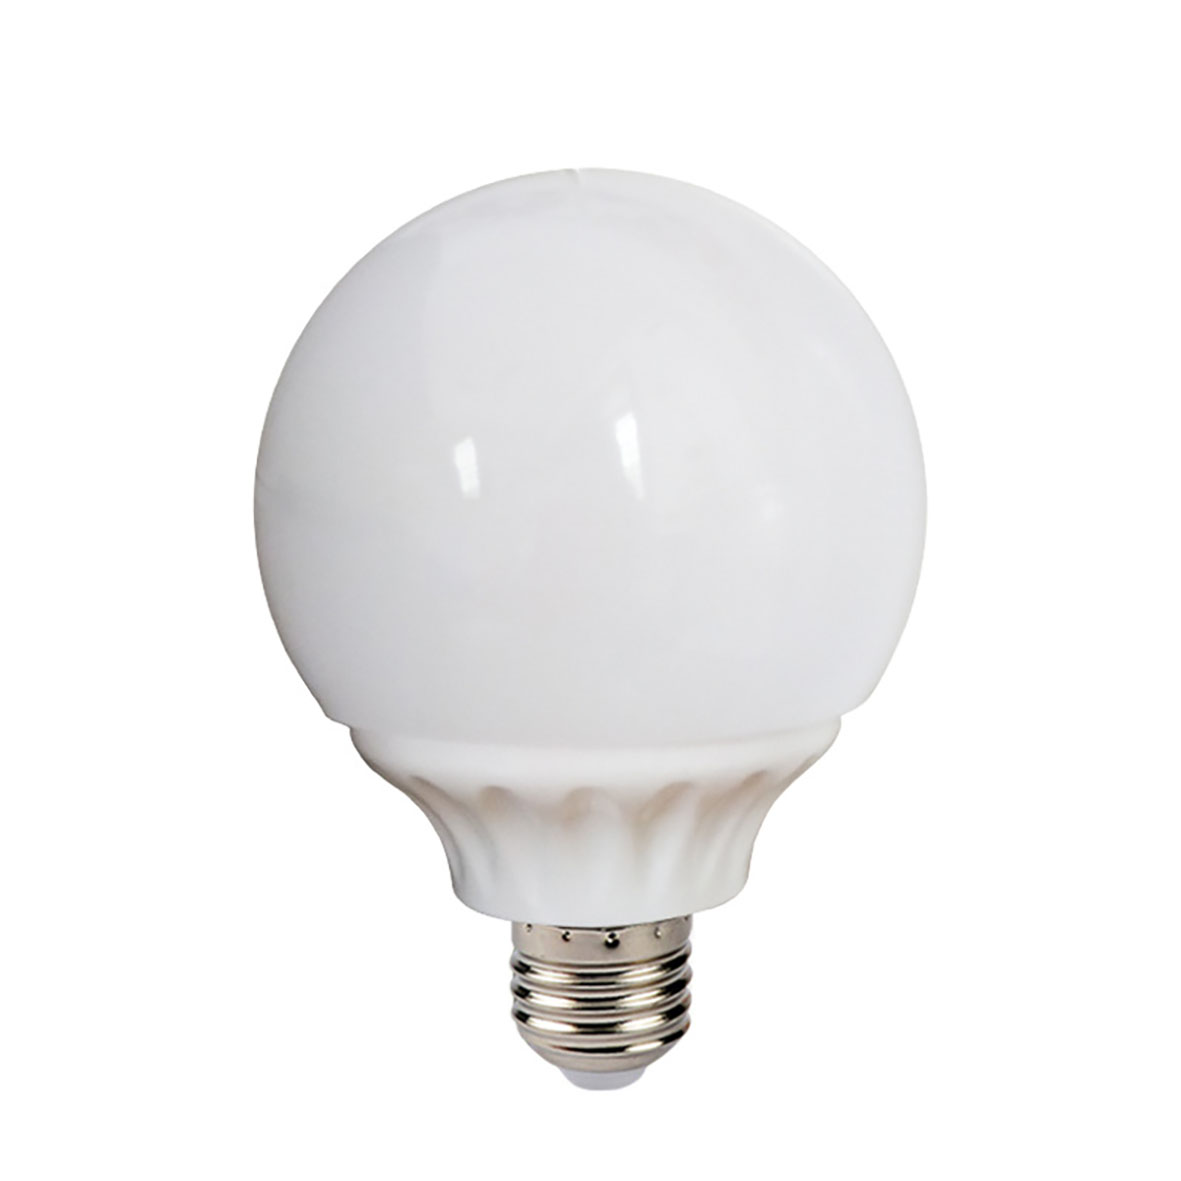 Cheap 8w 10w 12w 15w 20w Led Bulb COB 6500K Warm White G Shape Globe Led Lamp Bulbs